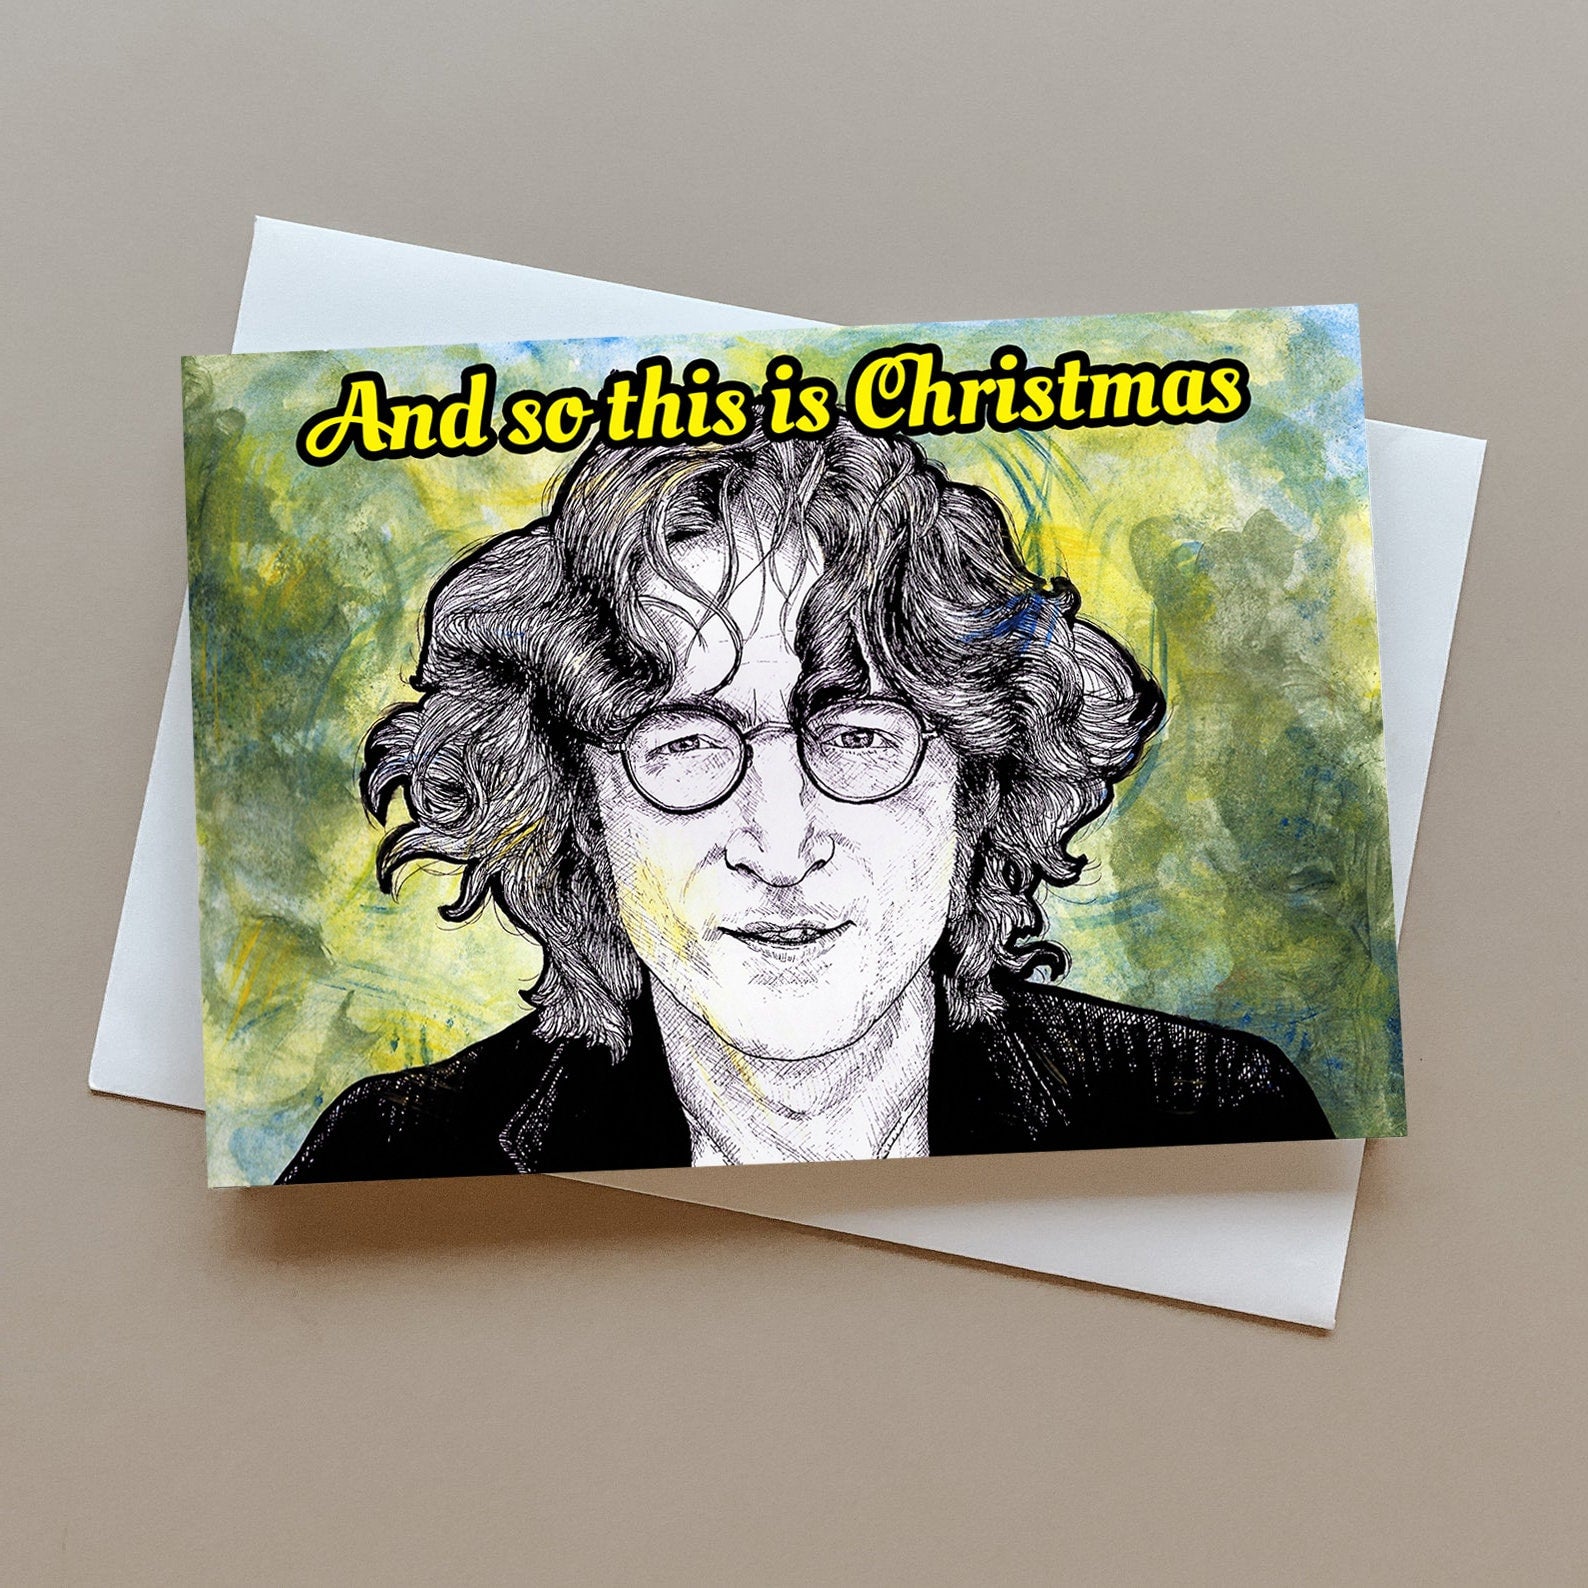 John Lennon Christmas card, The Beatles Christmas card, music Christmas card, personalised card, gift for John Lennon fan